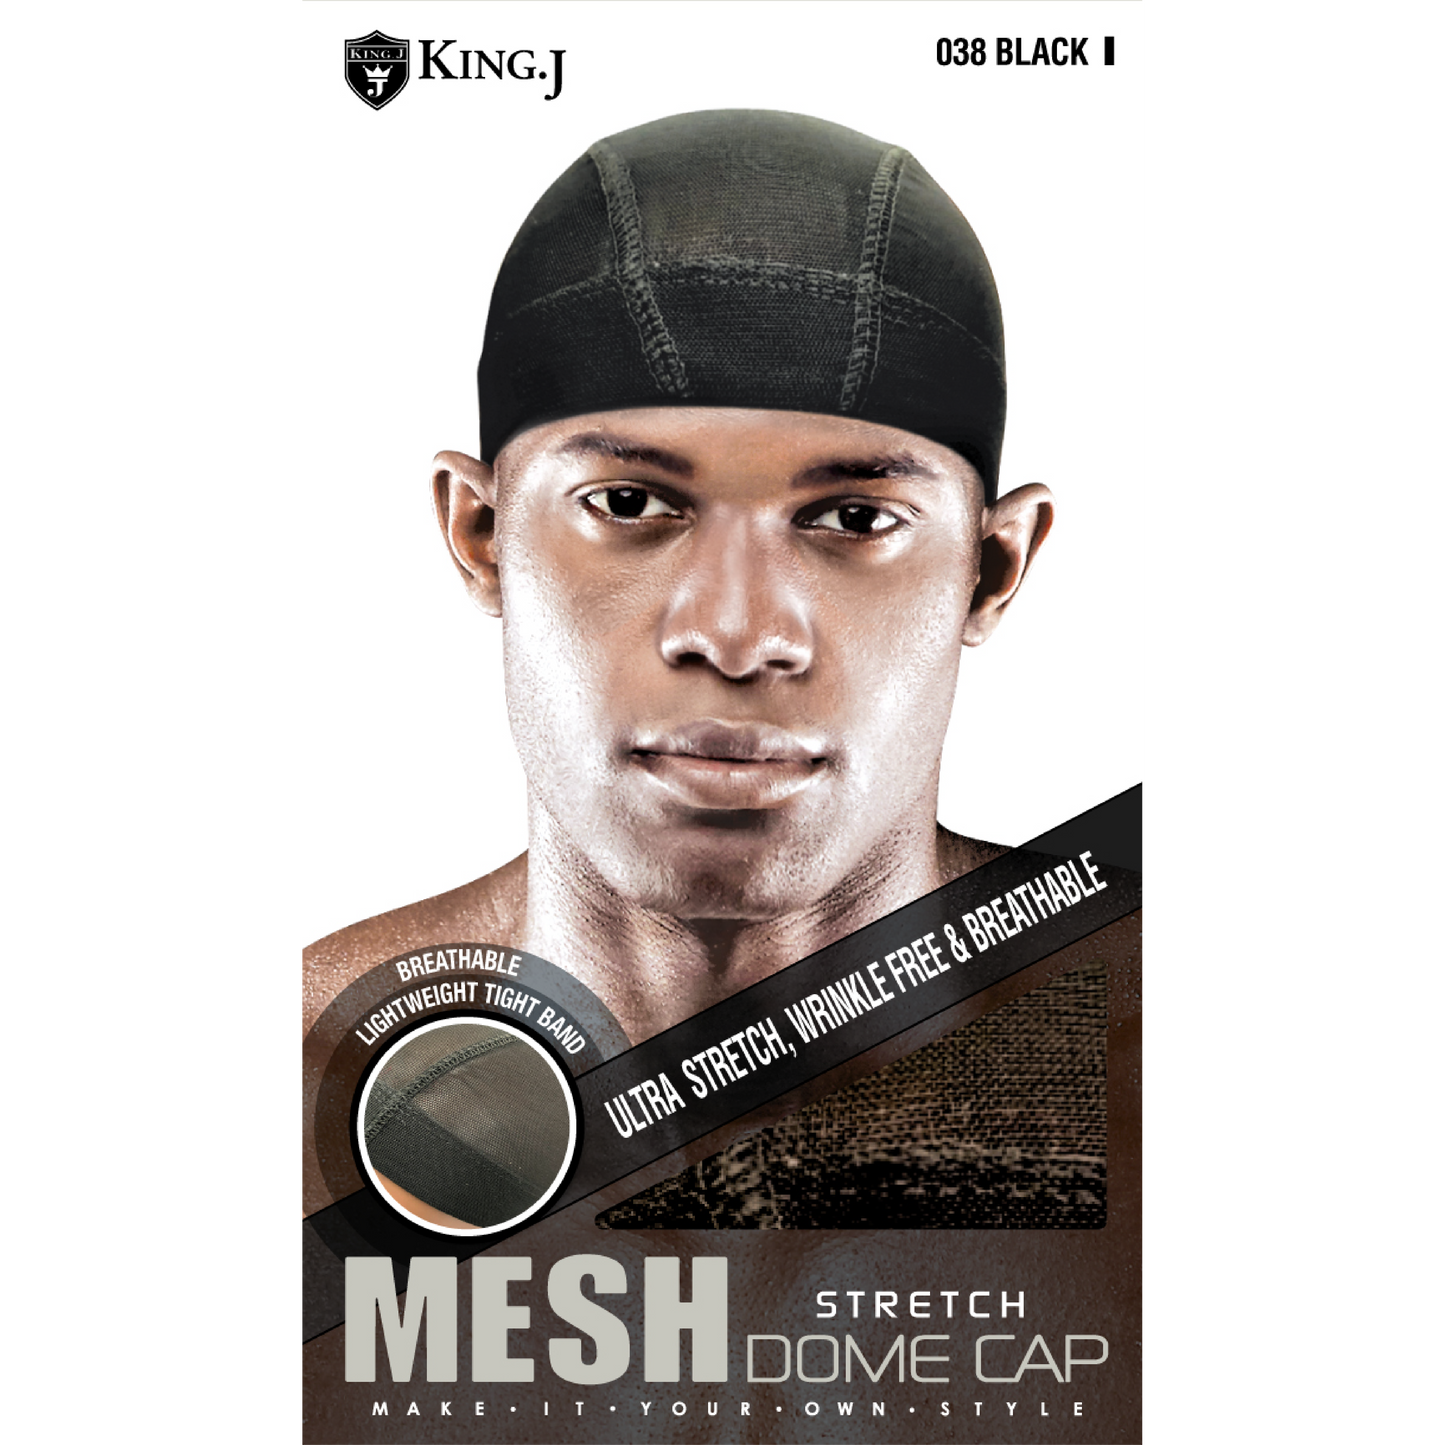 STRETCH MESH DOME CAP